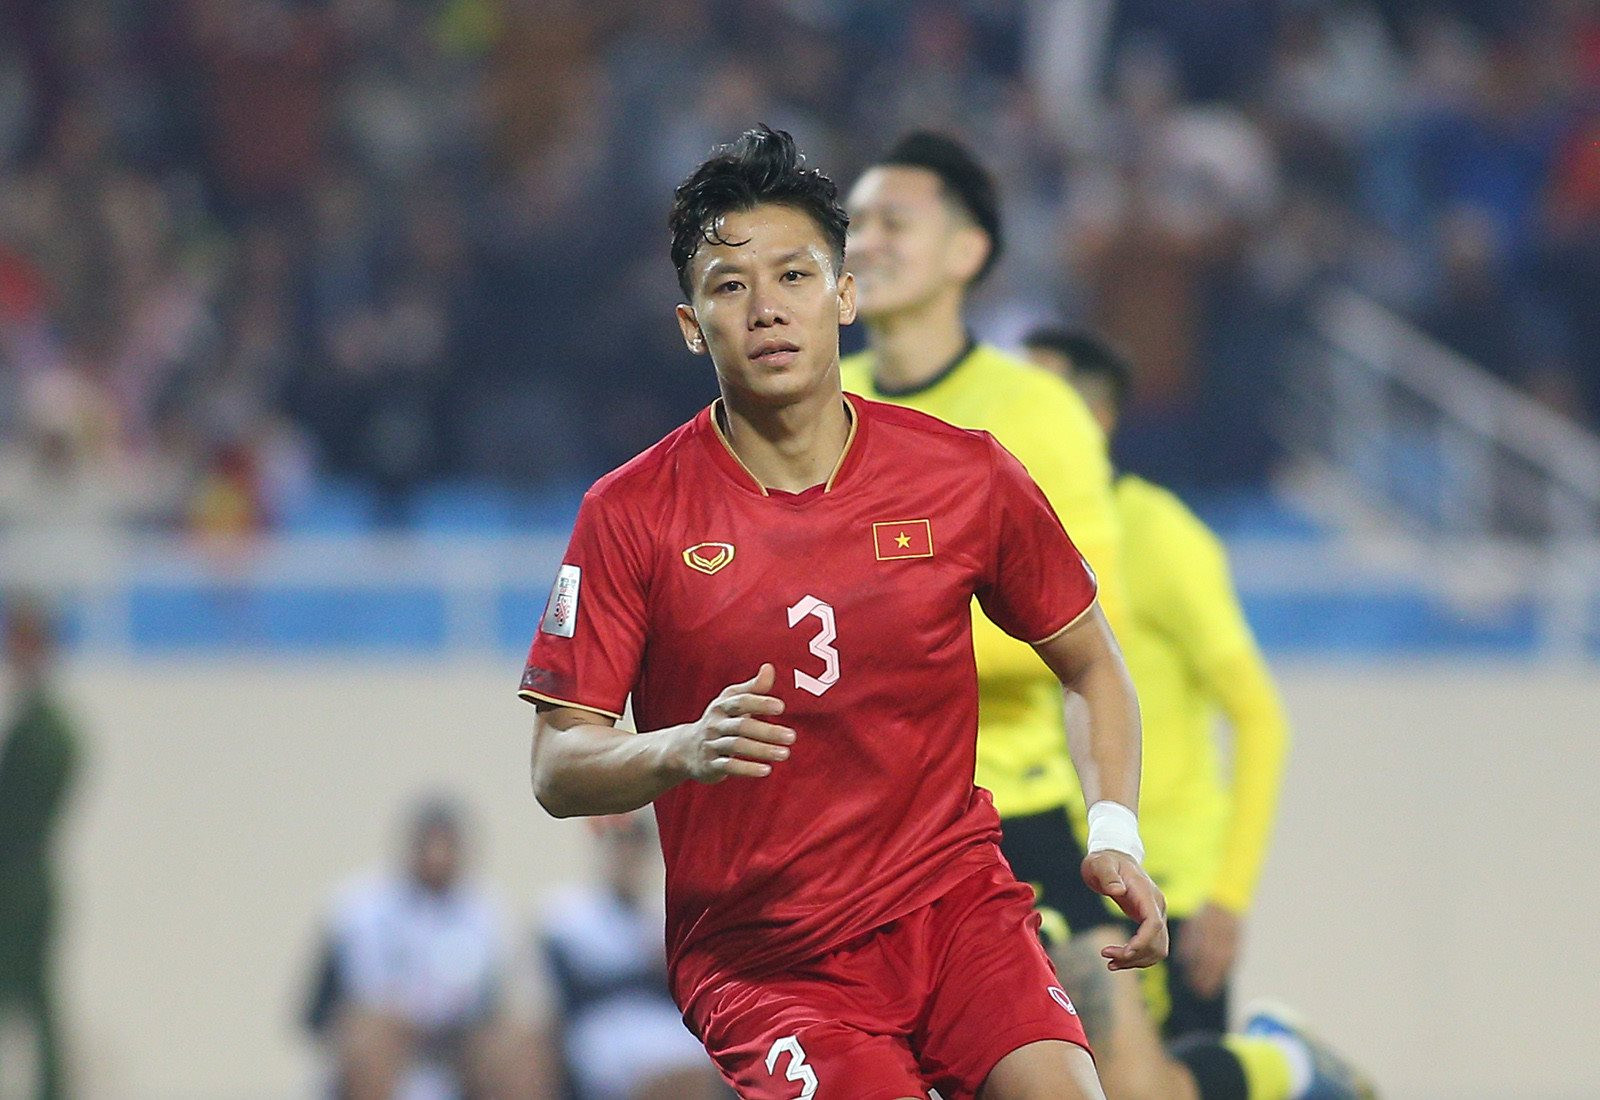 “Bão chấn thương” càn quét tuyển Việt Nam trước thềm Asian Cup